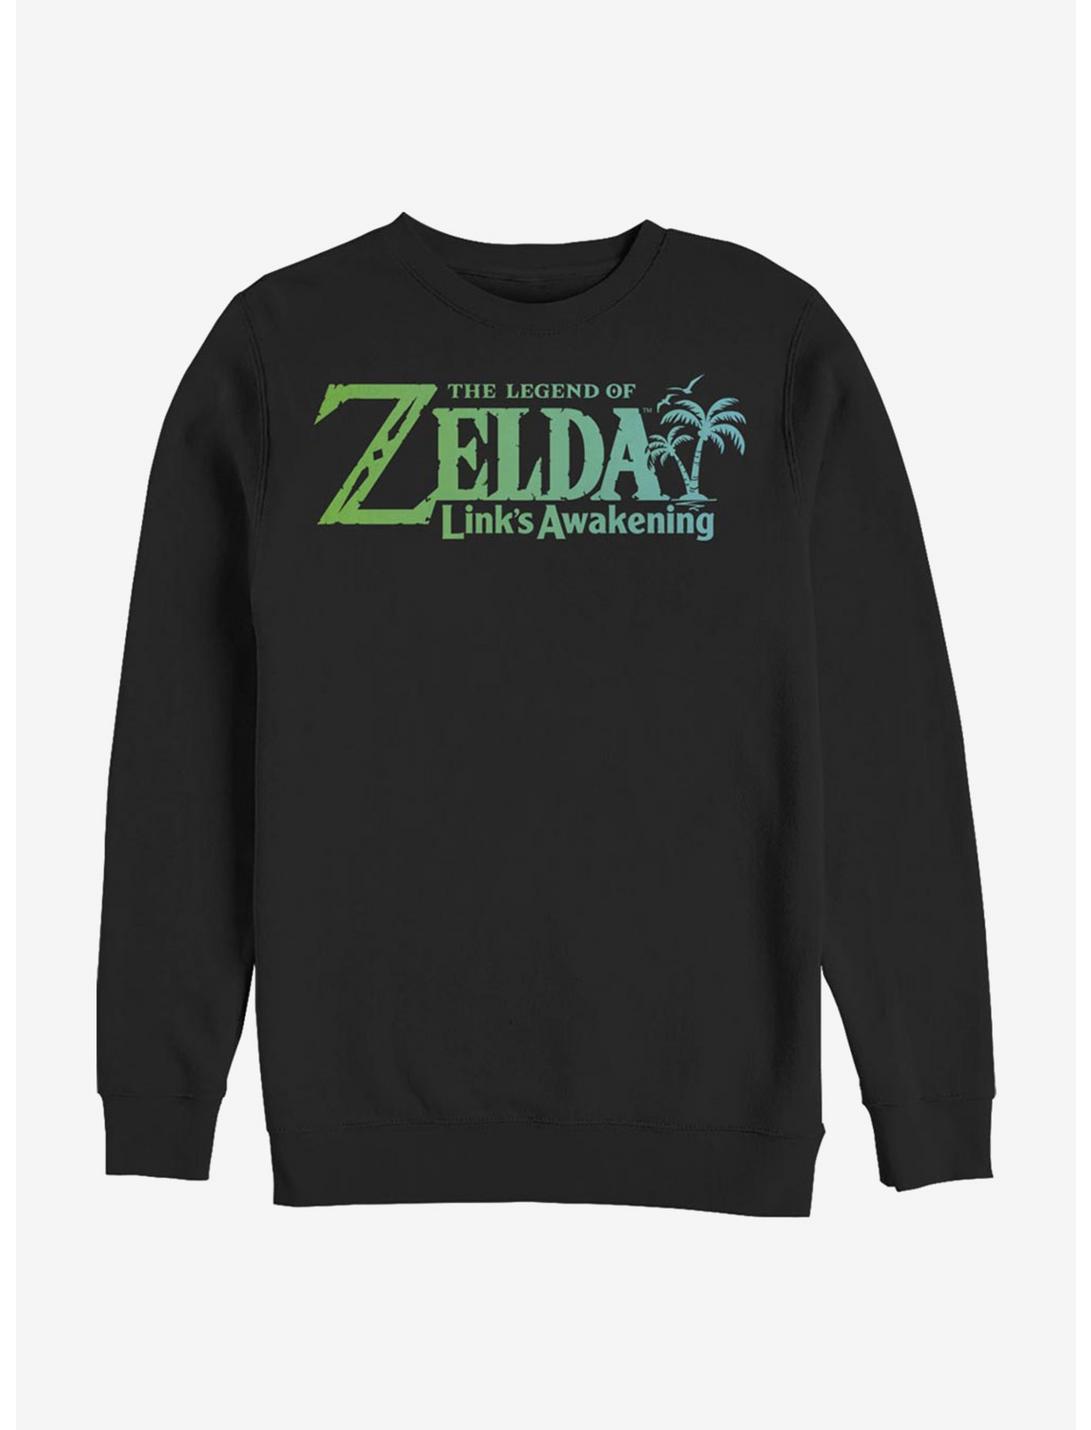 The Legend Of Zelda Links Awakening Art Crew Sweatshirt, BLACK, hi-res